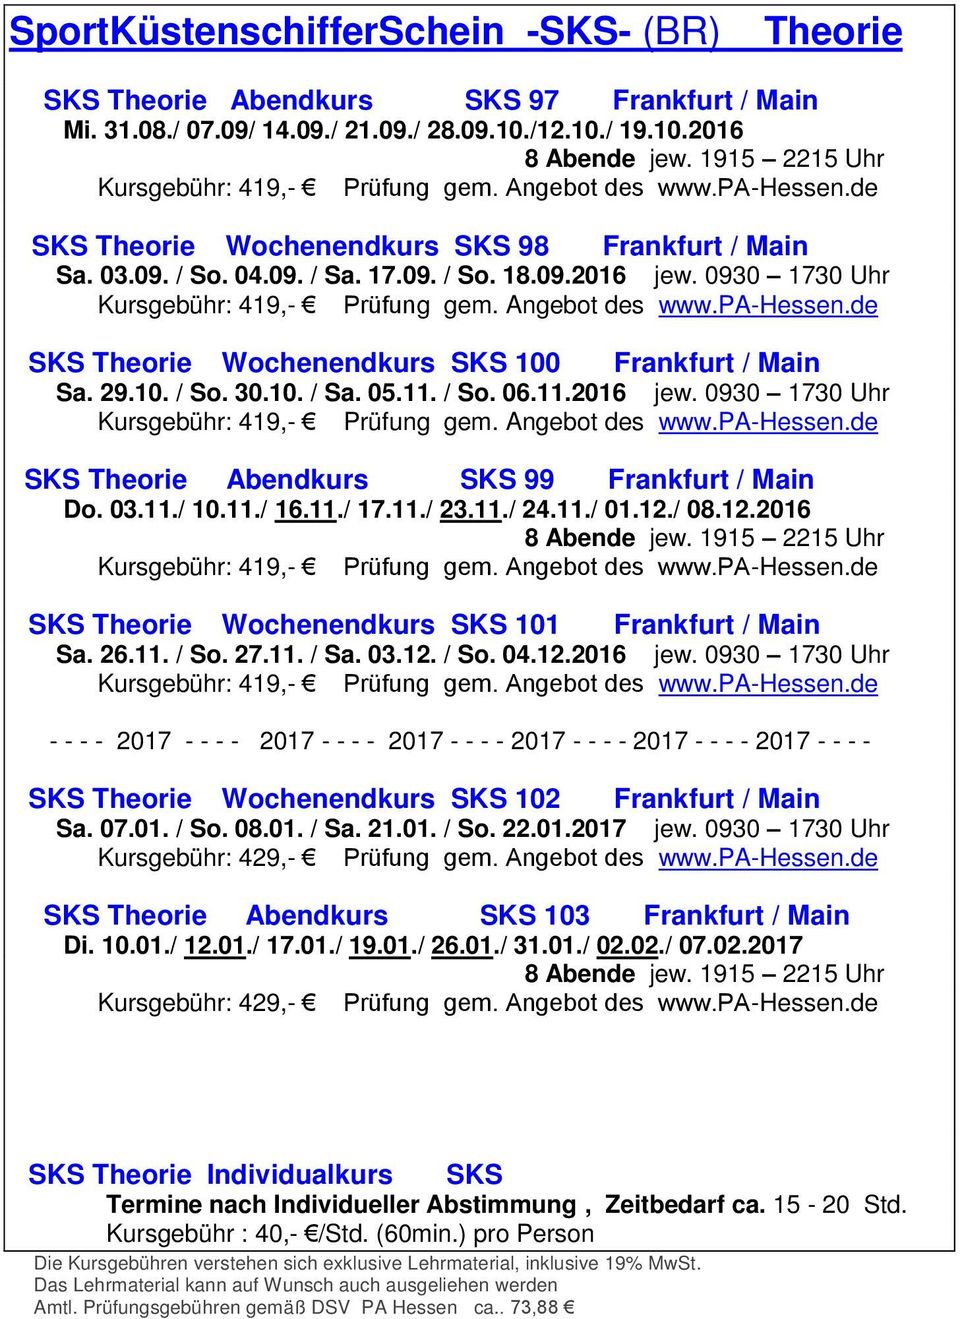 0930 1730 Uhr Kursgebühr: 419,- Prüfung gem. Angebot des www.pa-hessen.de SKS Theorie Wochenendkurs SKS 100 Frankfurt / Main Sa. 29.10. / So. 30.10. / Sa. 05.11. / So. 06.11.2016 jew.